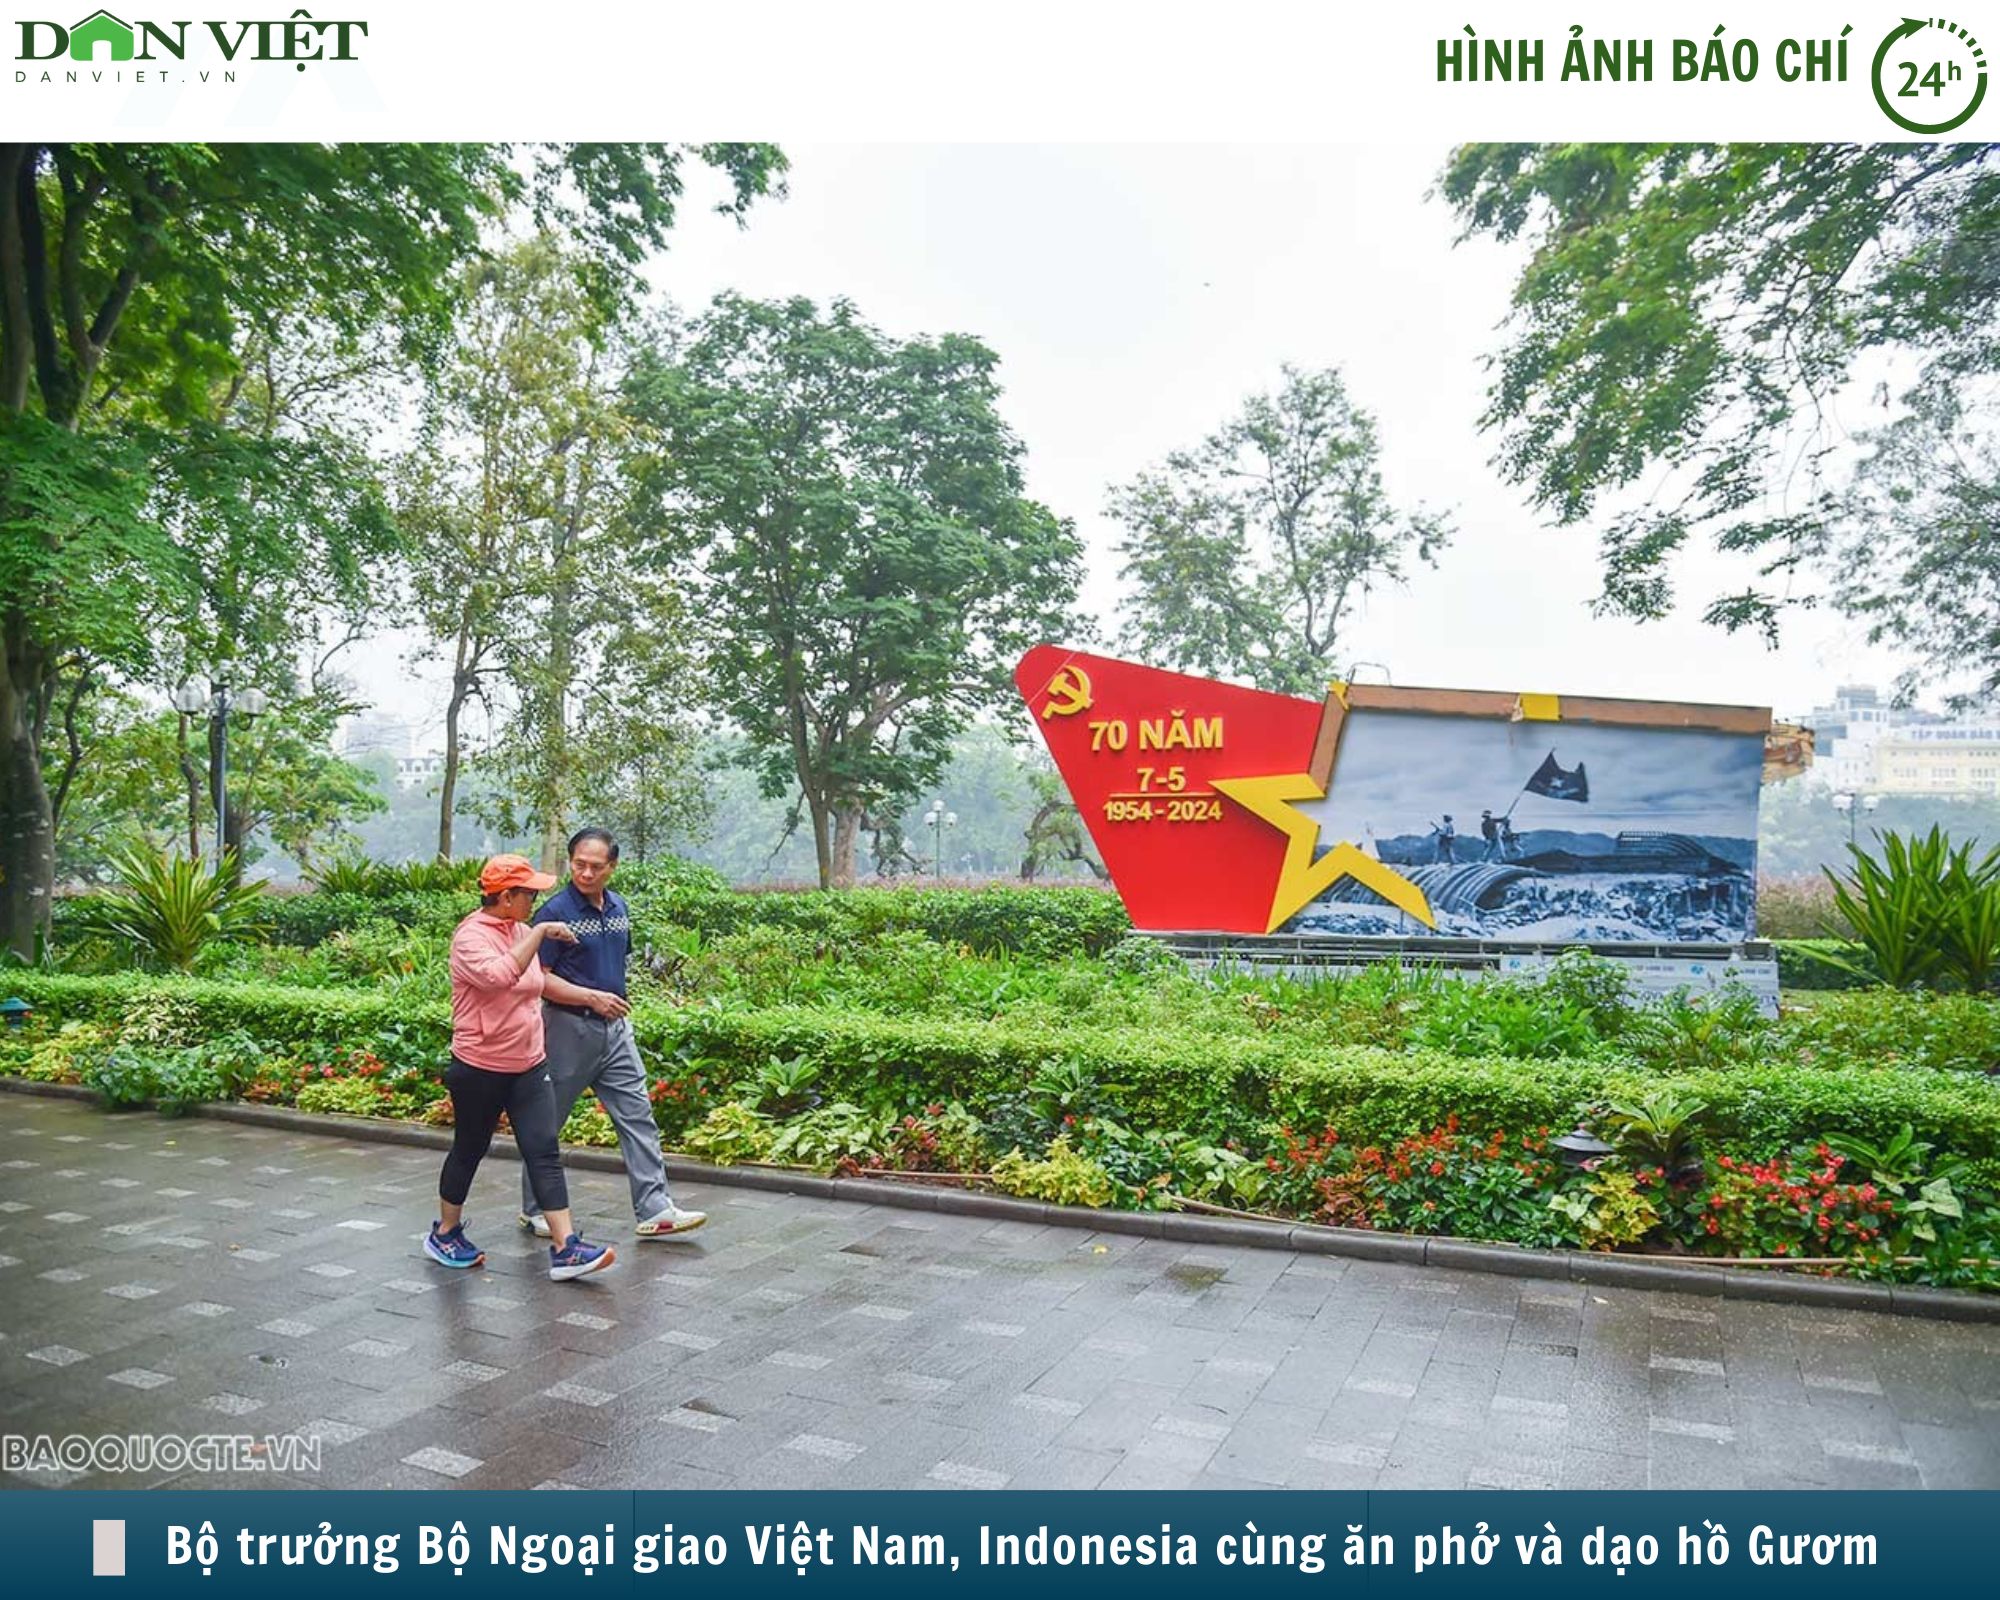 Hình ảnh báo chí 24h: Bộ trưởng Bộ Ngoại giao Việt Nam và Indonesia đi dạo hồ Gươm và ăn sáng cùng nhau- Ảnh 1.